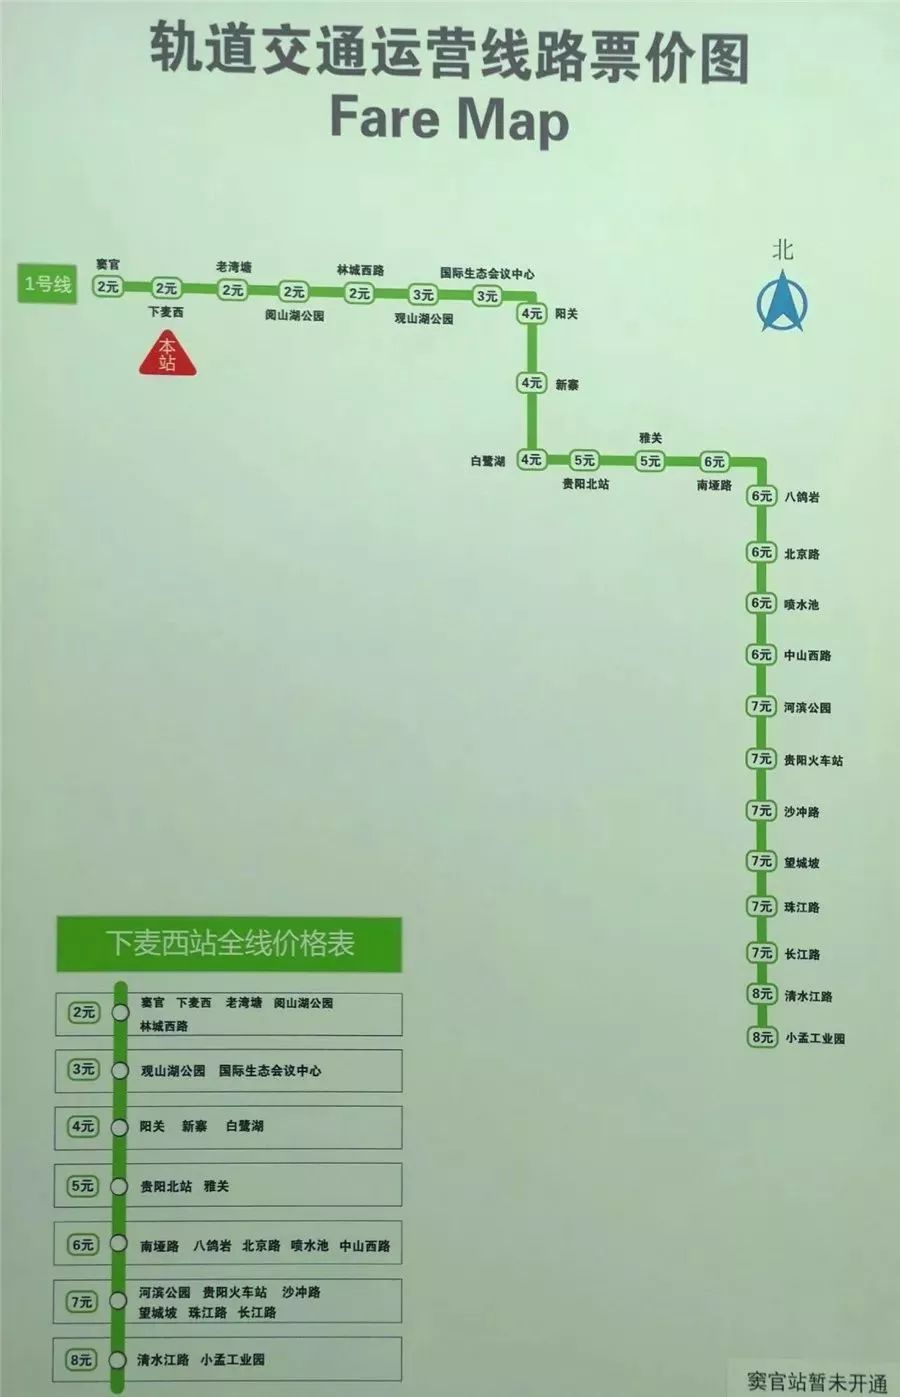 贵阳地铁1号线12月1日开通,2元起步,最高8元!